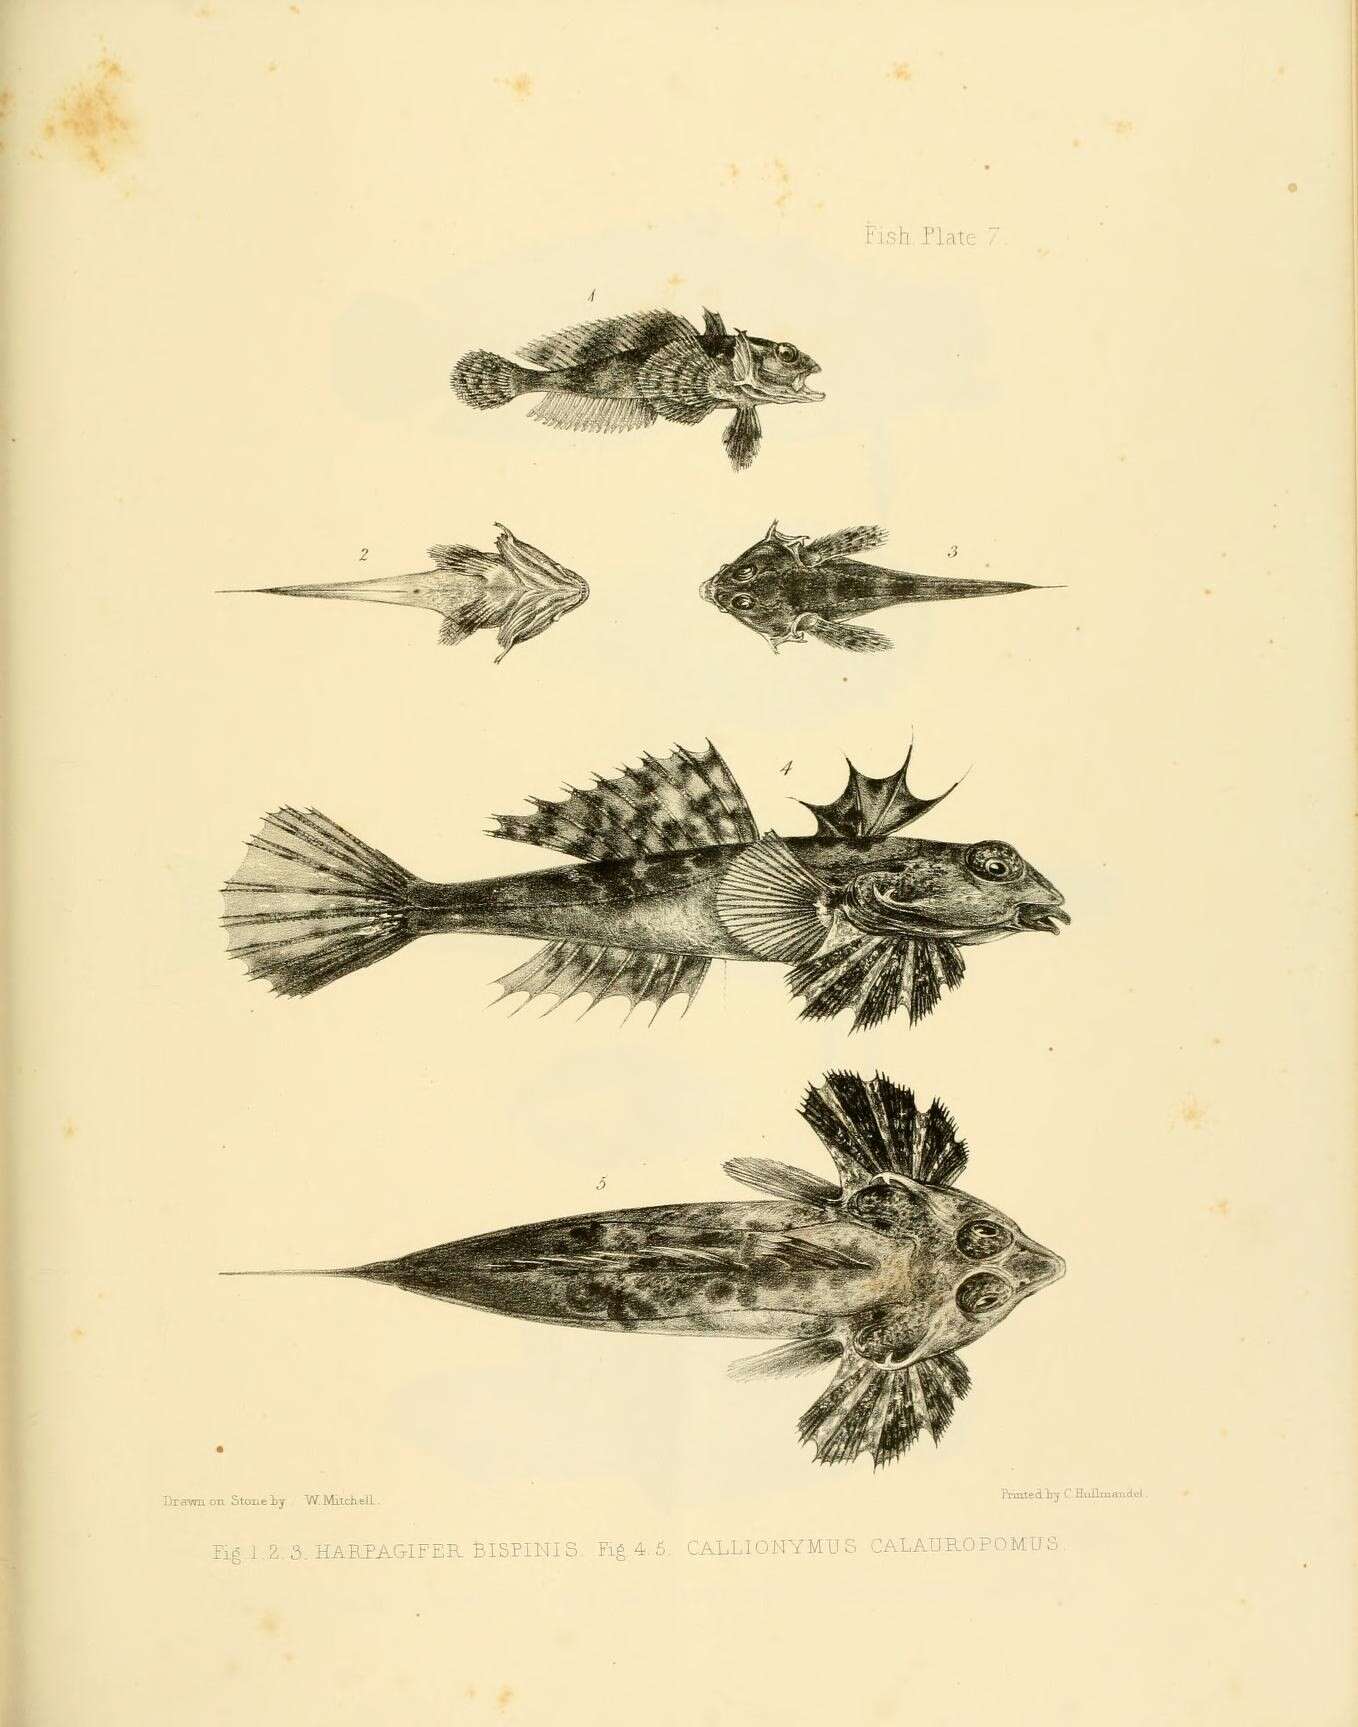 Image of Magellan plunderfish